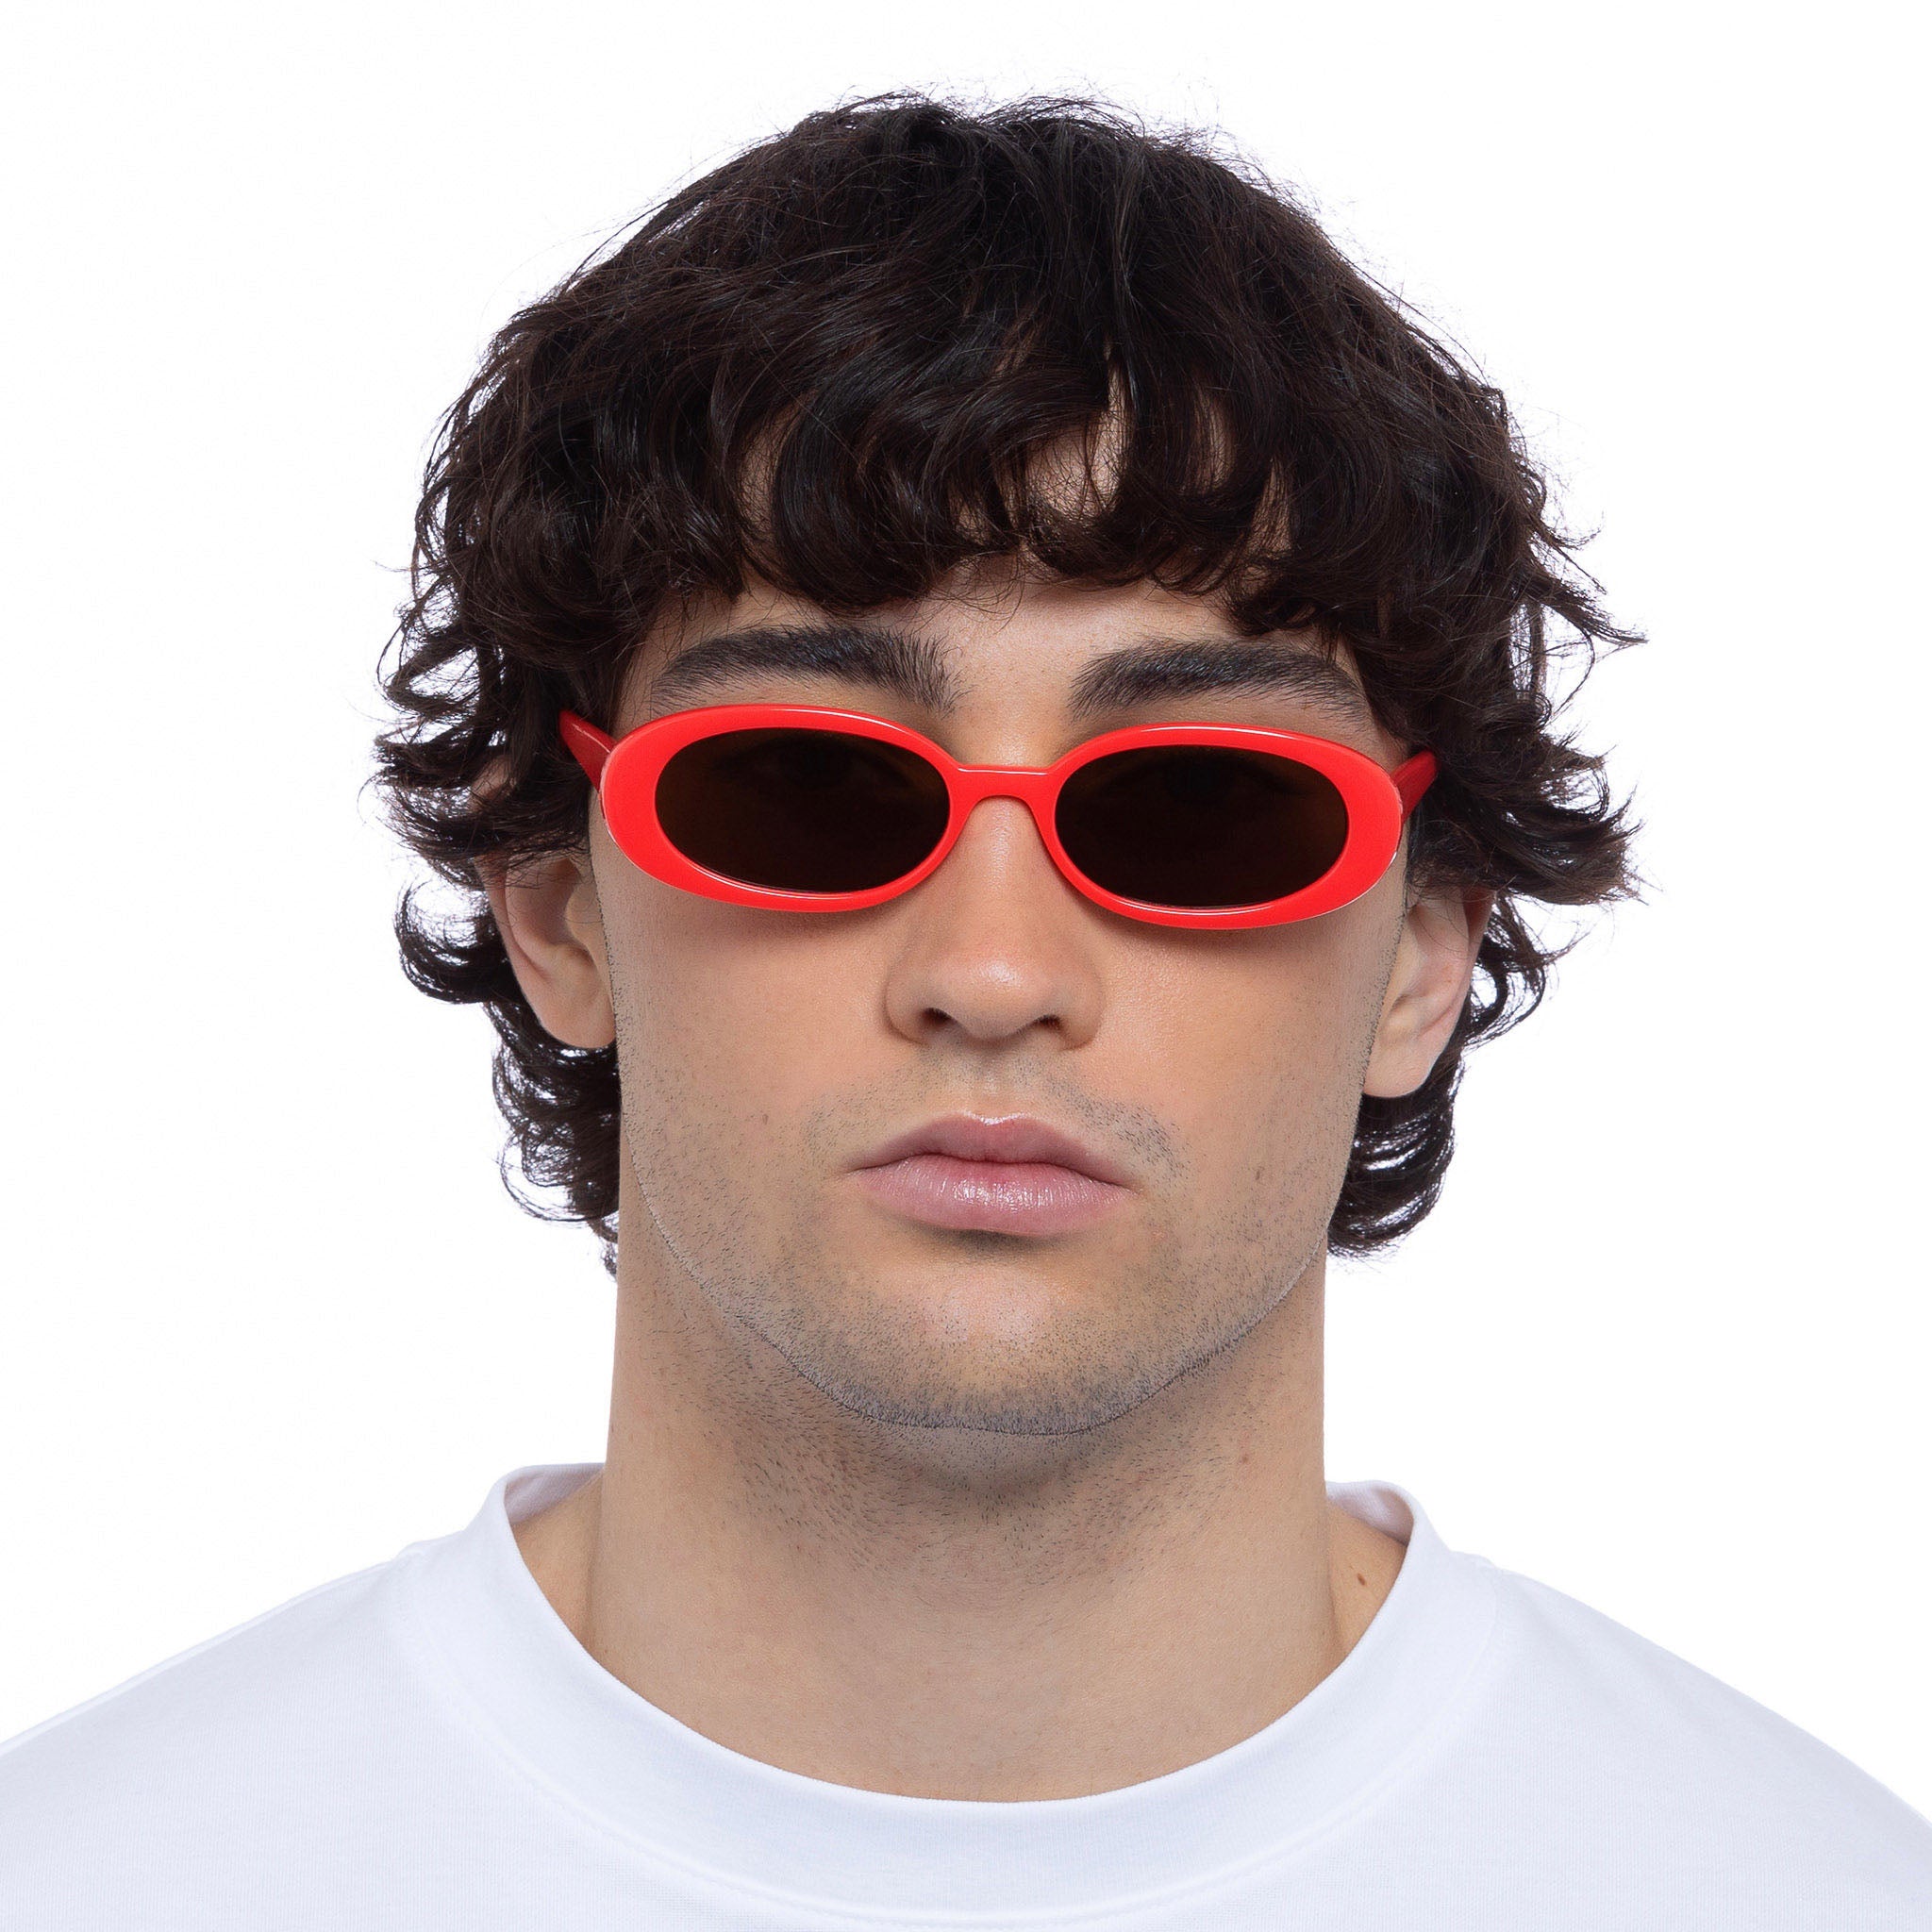 Le Specs Sunglasses - Outta Love Sunglasses - Electric Orange